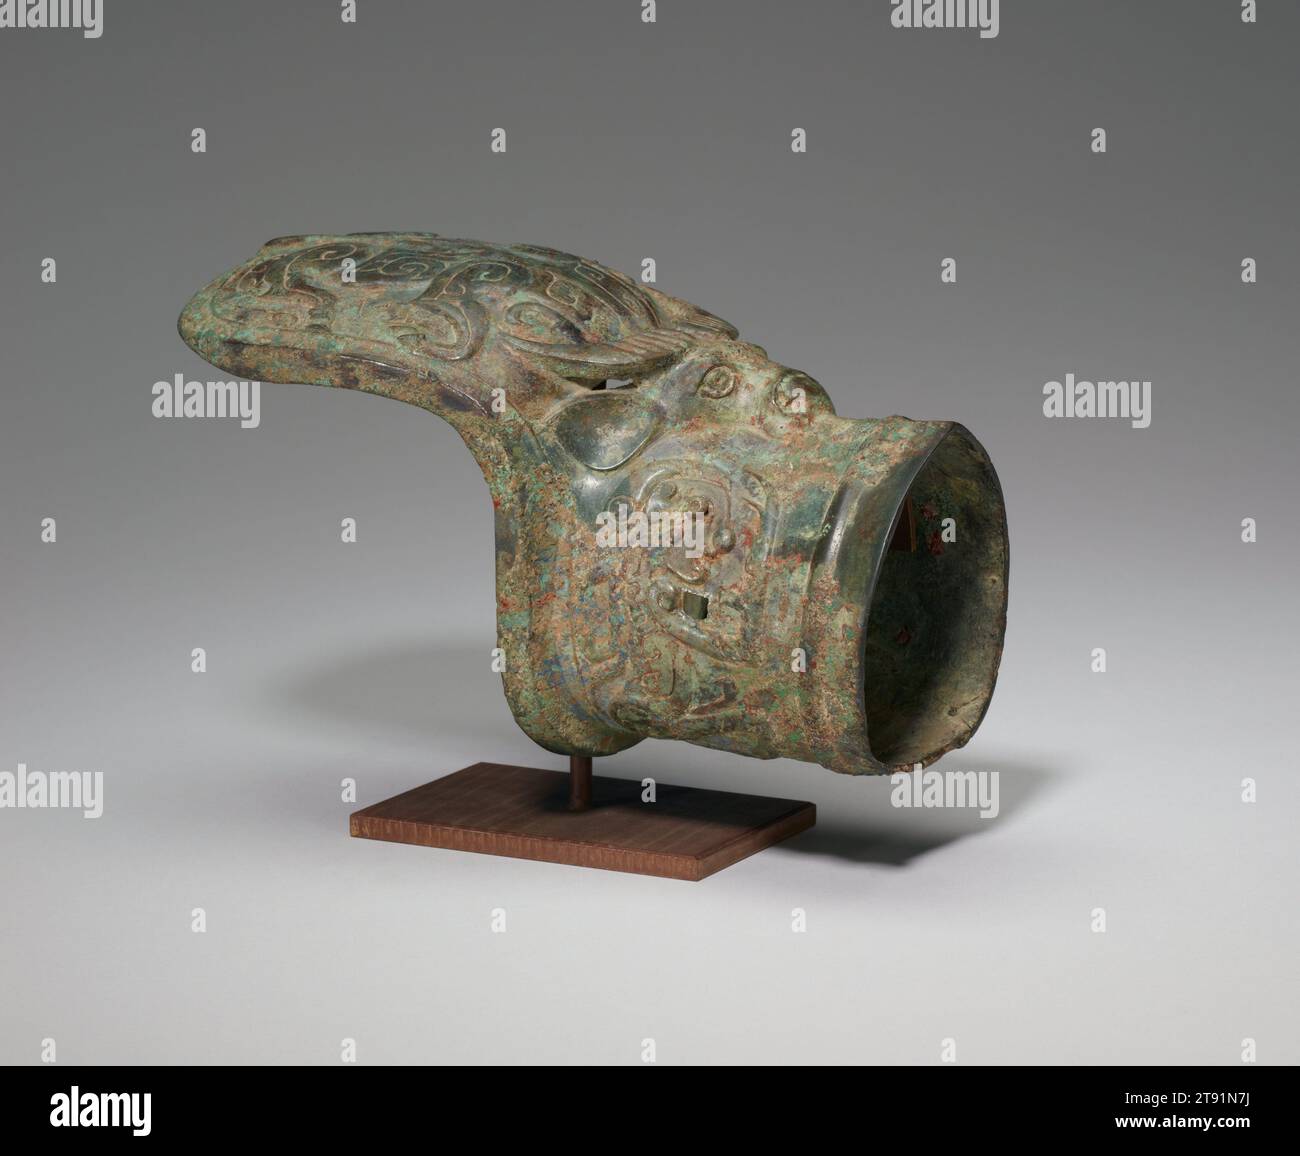 Douille d'arbre de chariot, 13e-12e siècle av. J.-C., 4 15/16 × 8 5/16 × 4 1/8 po., 1,5 lb. (12,54 × 21,11 × 10,48 cm, 0,7 kg), Bronze, Chine, 13e-12e siècle av. J.-C., cet objet en bronze servait de ferrure sur un char tiré par des chevaux. Le char accompagnait le défunt à l'enterrement et le servit probablement dans l'au-delà. Le décor de cet objet extraordinaire est exécuté en haut relief et en partie en rond. Sur sa base se trouve une tête de buffle d'eau de forme réaliste, dont le corps est évasé sur le bouclier au-dessus de la douille. De chaque côté du cylindre se trouve une créature avec une tête humaine Banque D'Images